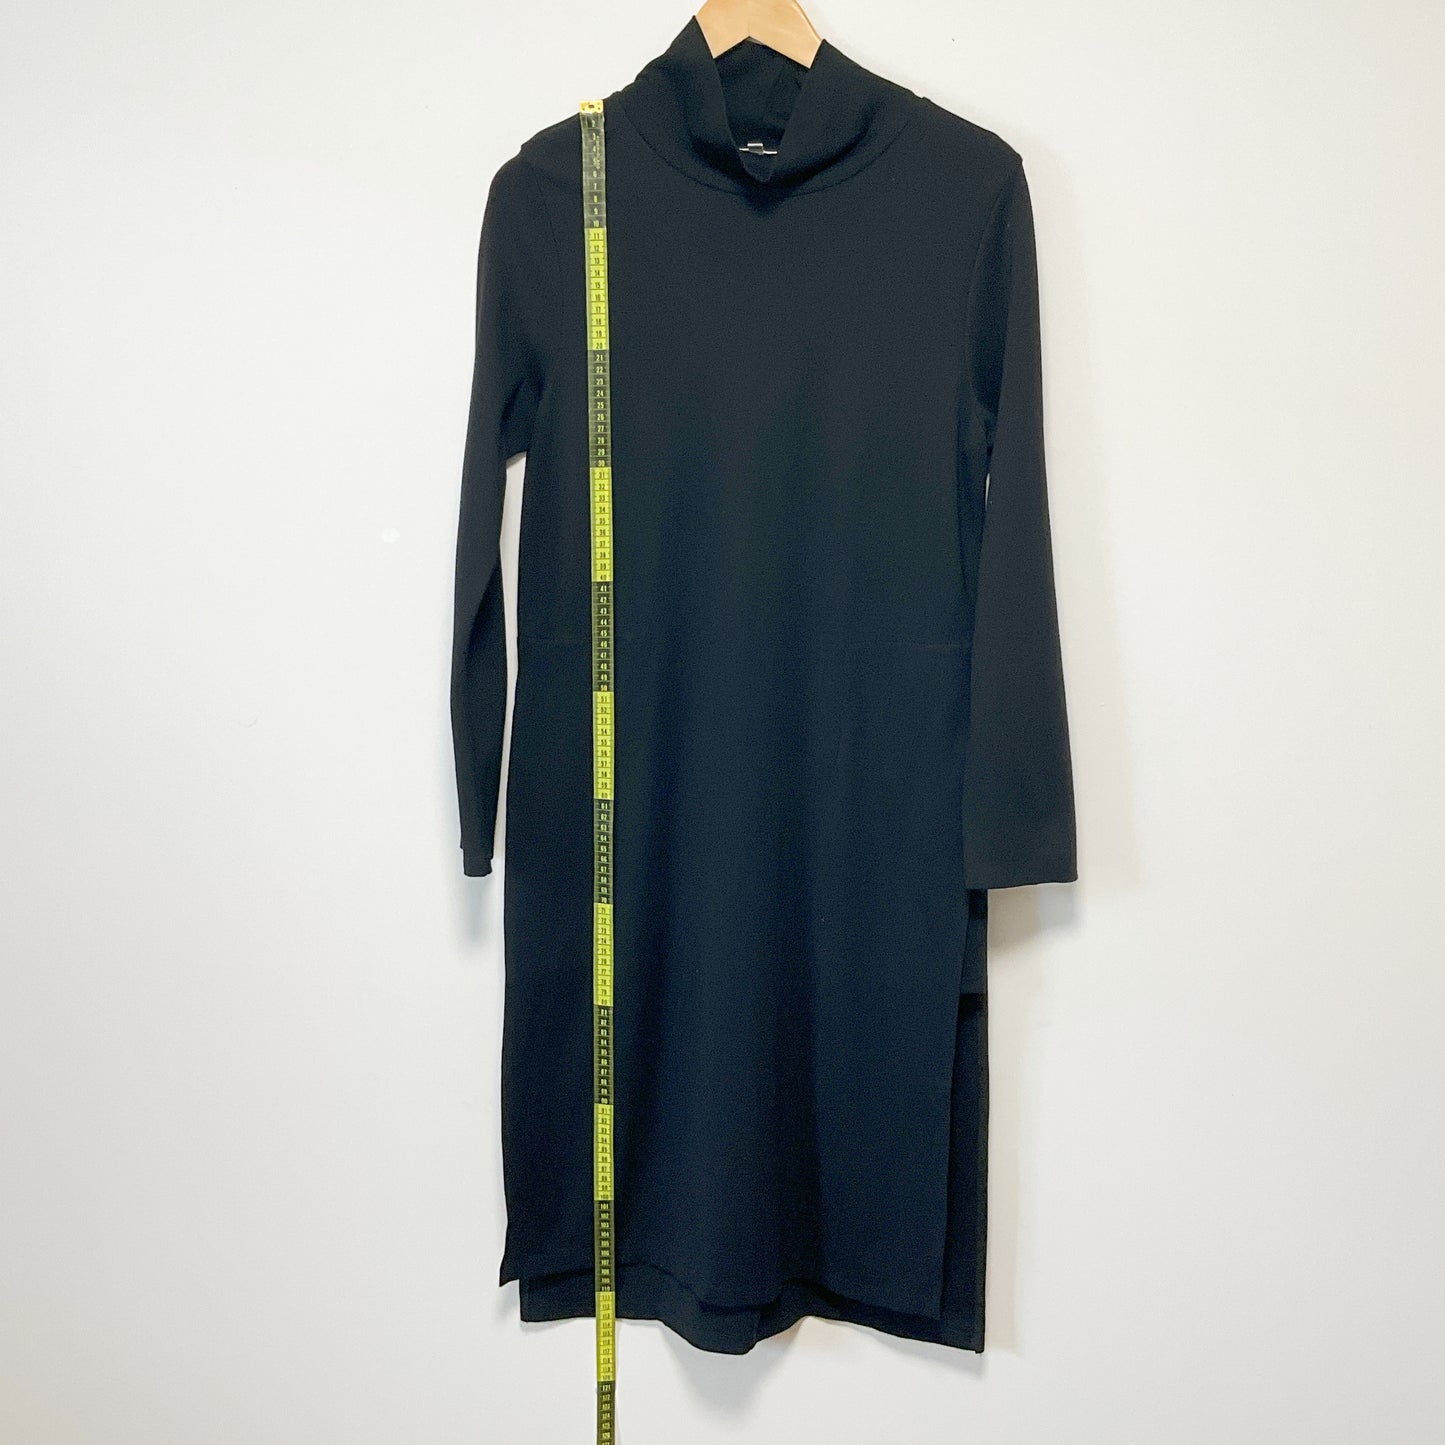 C.REED -  Long Sleeve Turtleneck Swing Dress